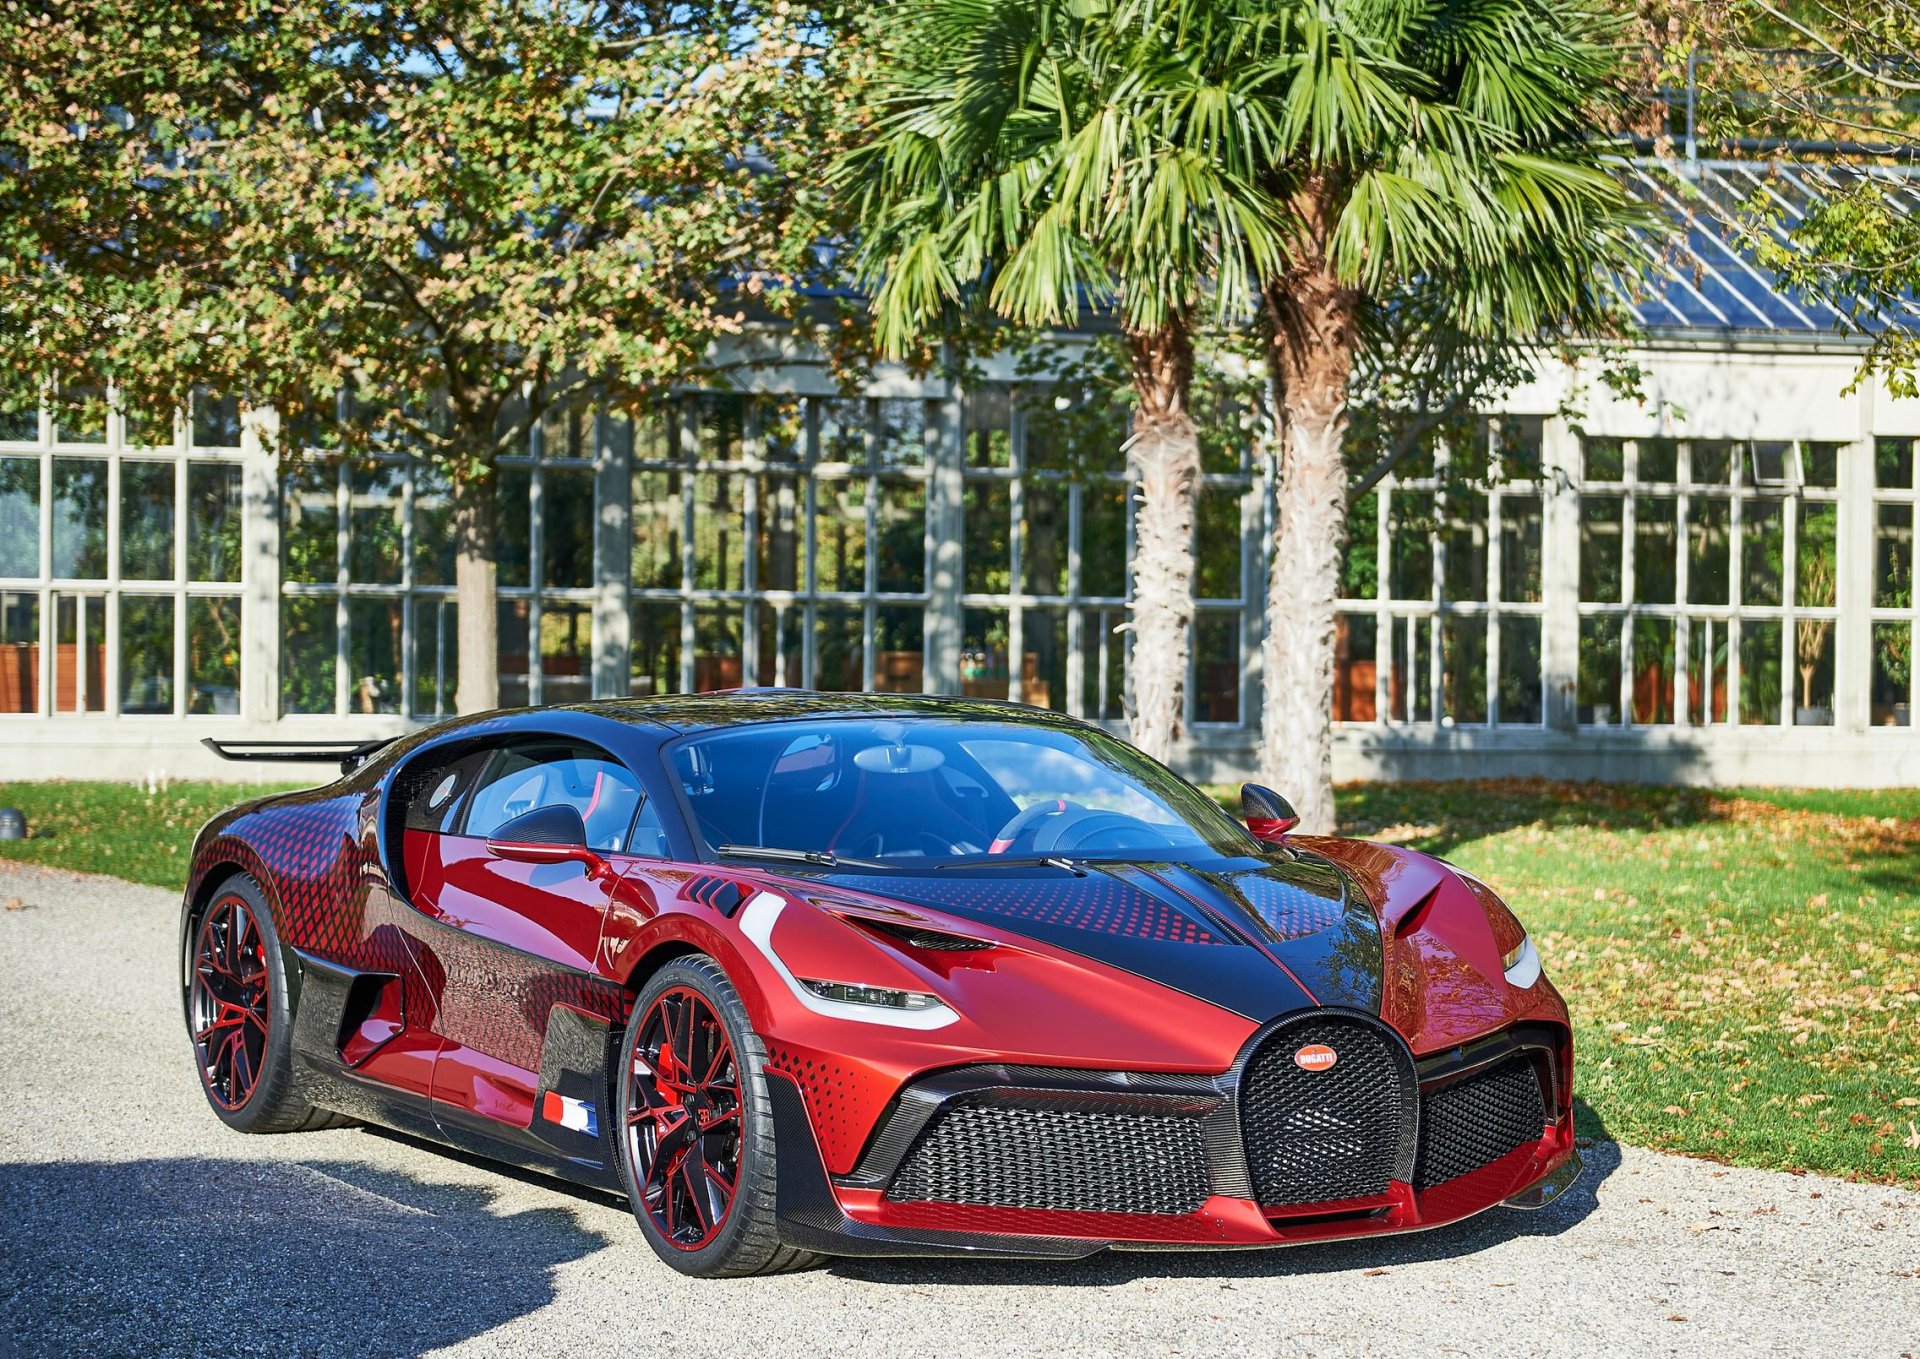 ใช้เวลากว่า 2 ปี จนสมบูรณ์แบบ กับงานสีตัวถังของ Bugatti DIVO คันนี้